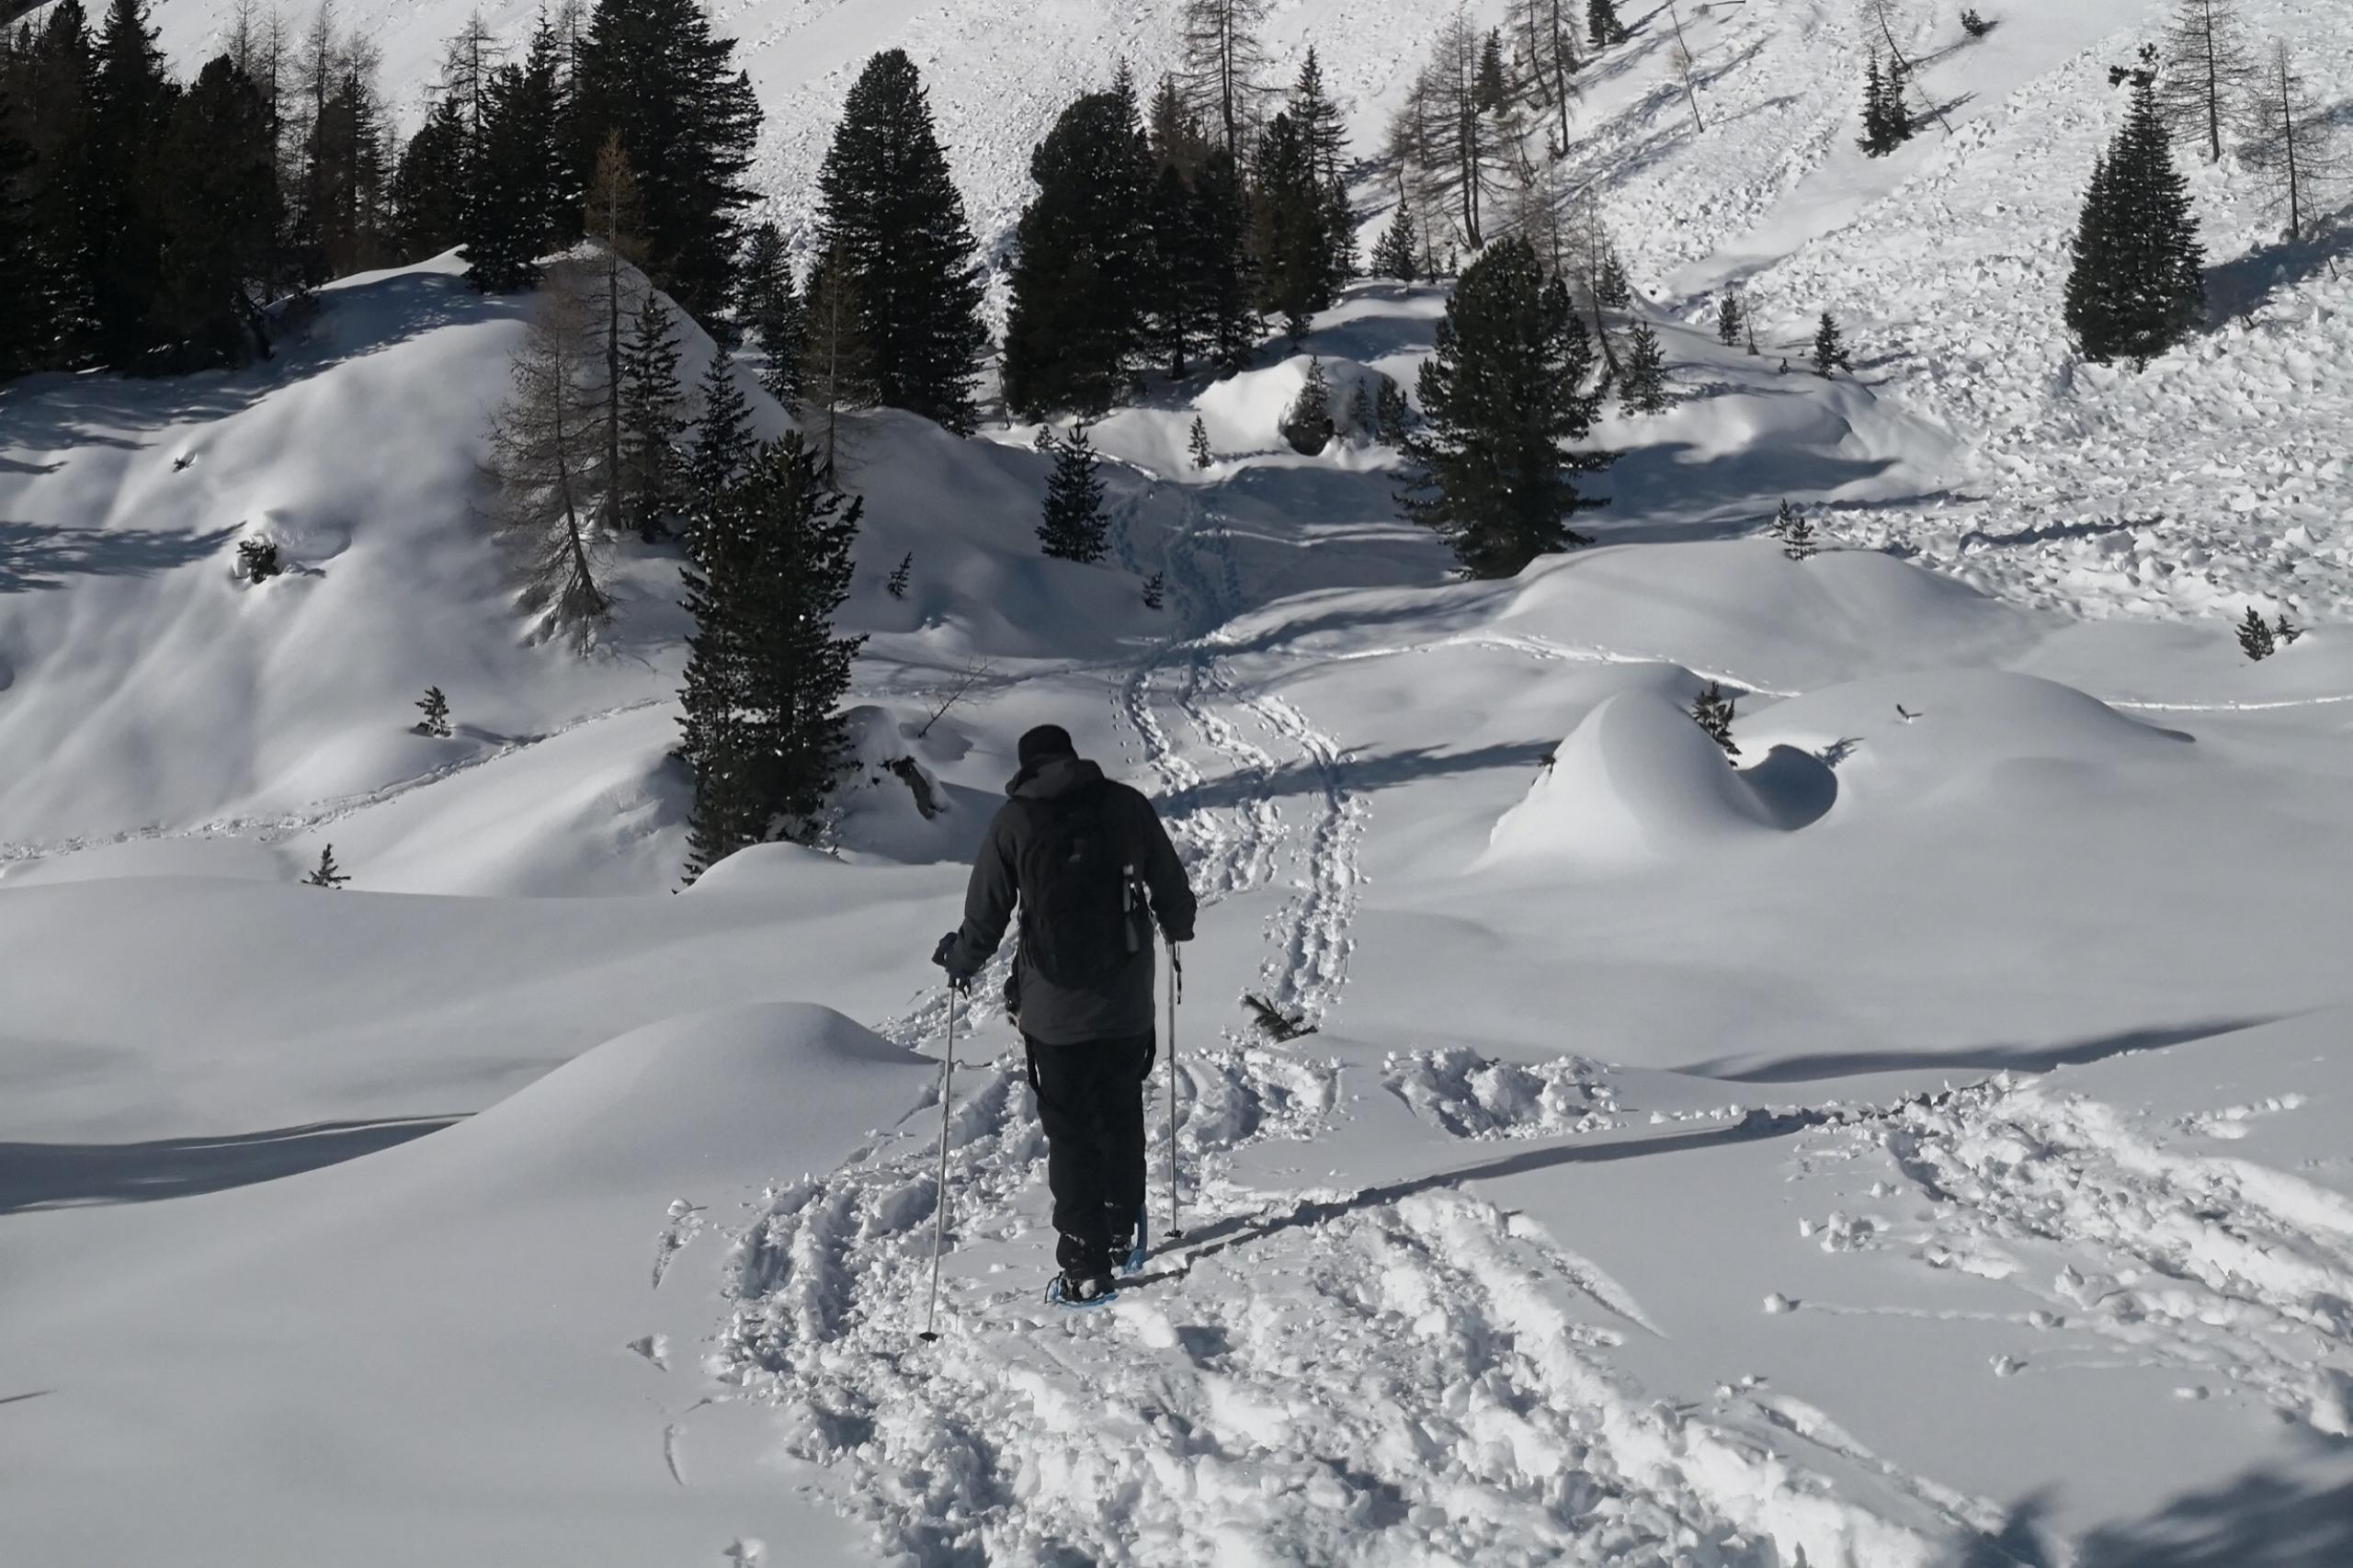  Eine Schneeschuhtour bietet die perfekte Möglichkeit, die Landschaft und die Natur zu geniessen. 